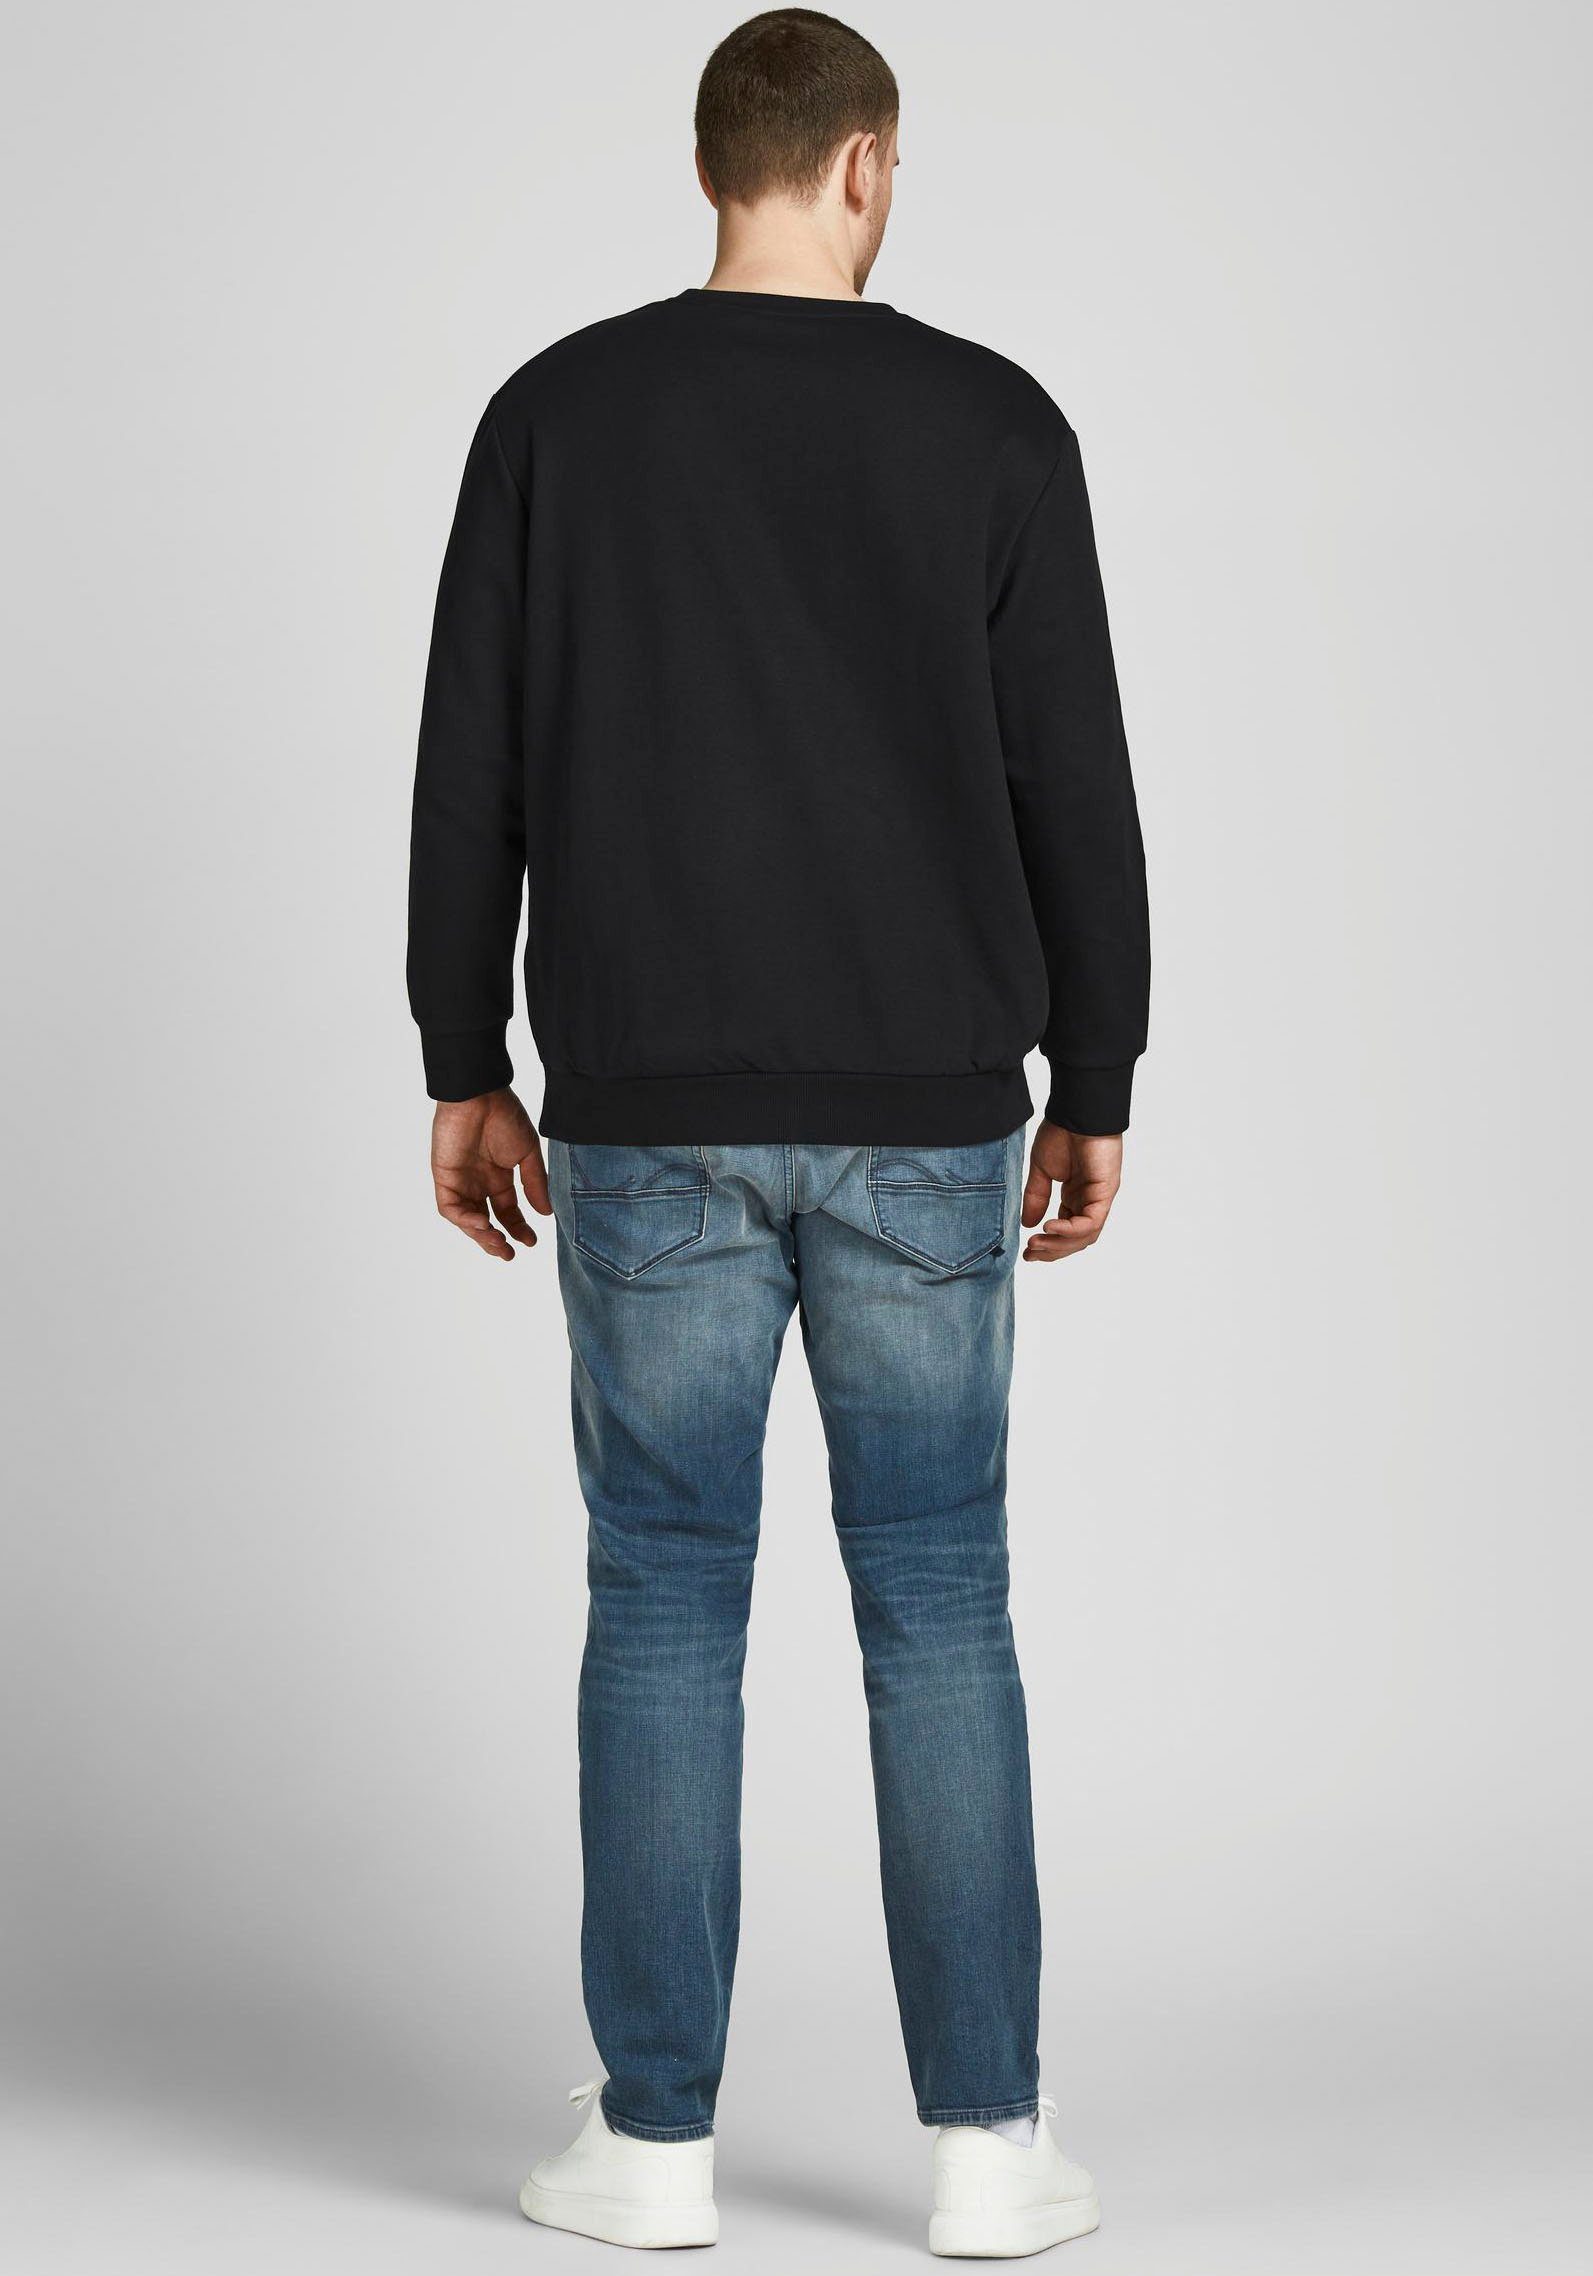 Jack Jones NECK Sweatshirt (Packung) & SWEAT CREW BASIC schwarz PlusSize